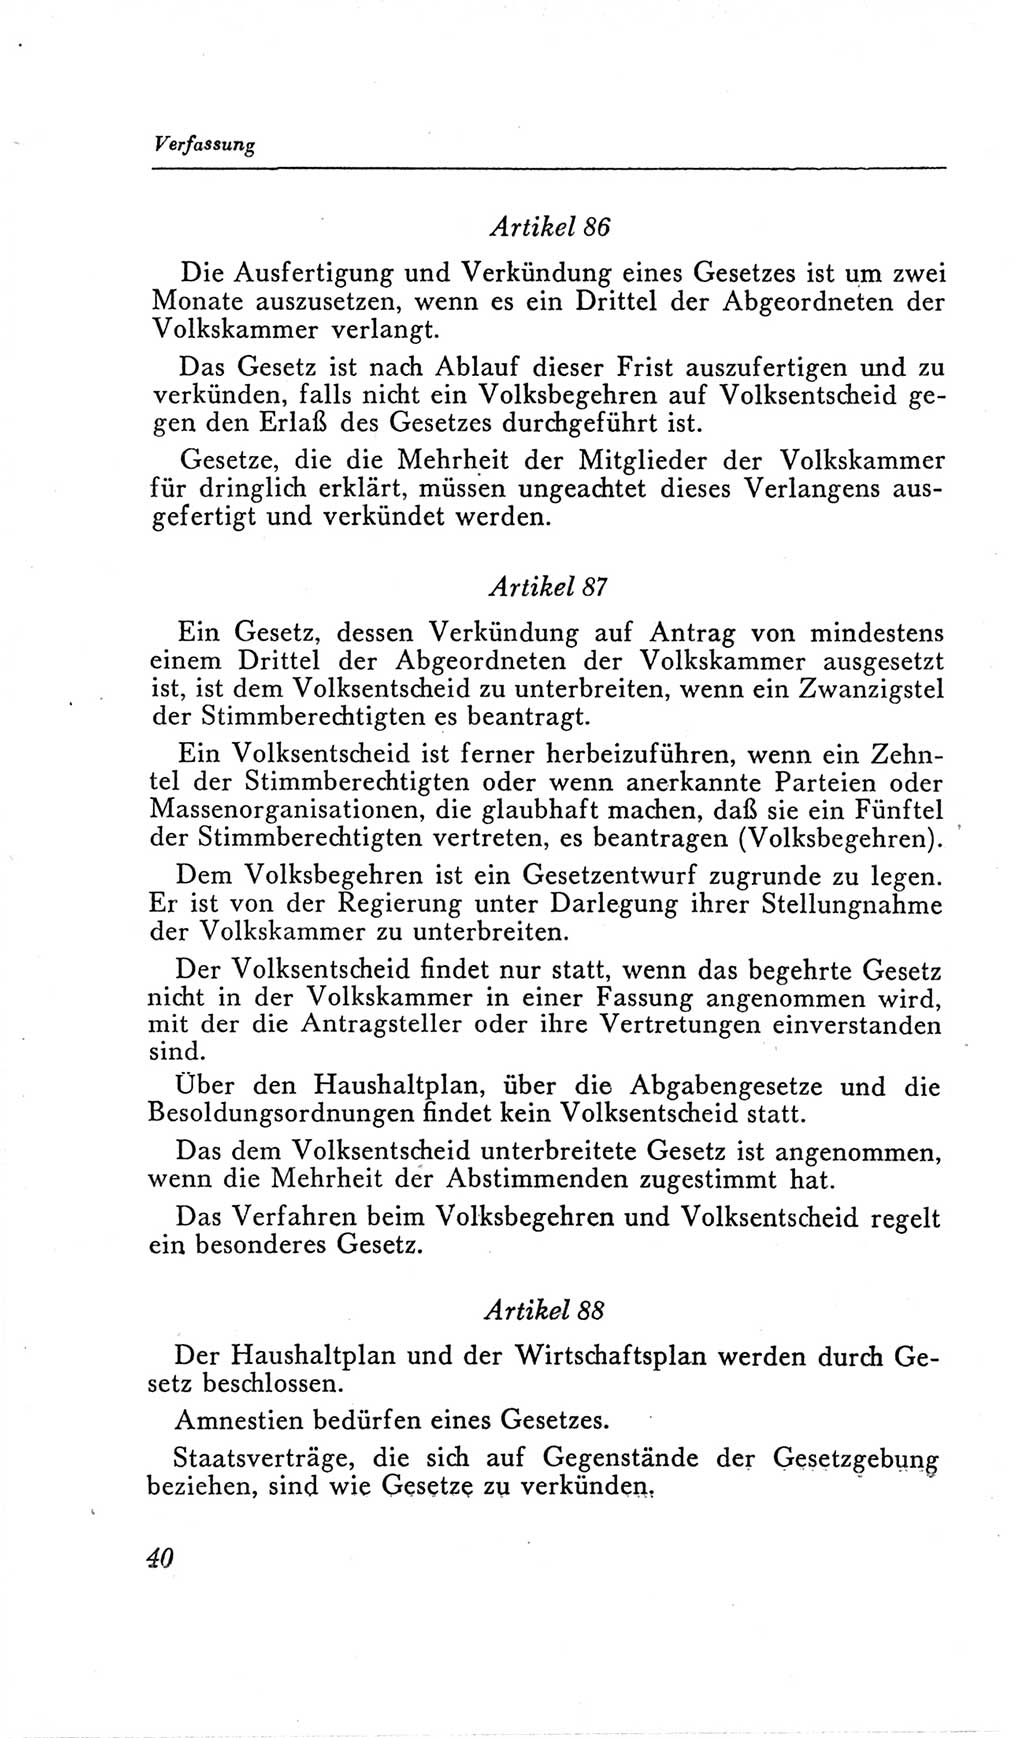 Handbuch der Volkskammer (VK) der Deutschen Demokratischen Republik (DDR), 2. Wahlperiode 1954-1958, Seite 40 (Hdb. VK. DDR, 2. WP. 1954-1958, S. 40)